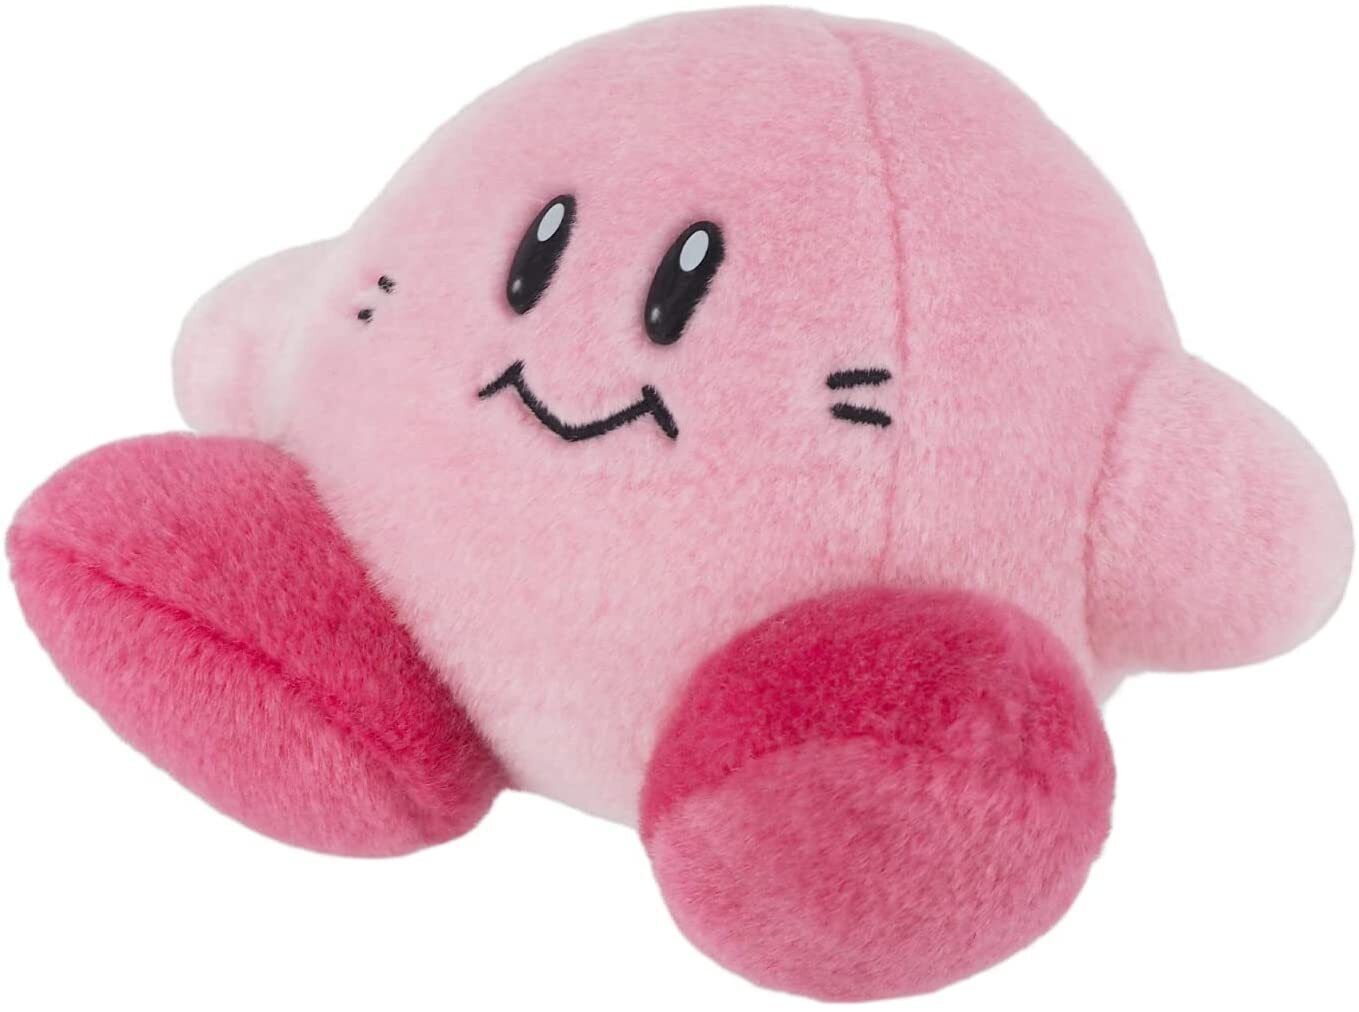 Kirby Super Star 30th Anniversary Plush Doll Classic Kirby Stuffed Toy New Japan